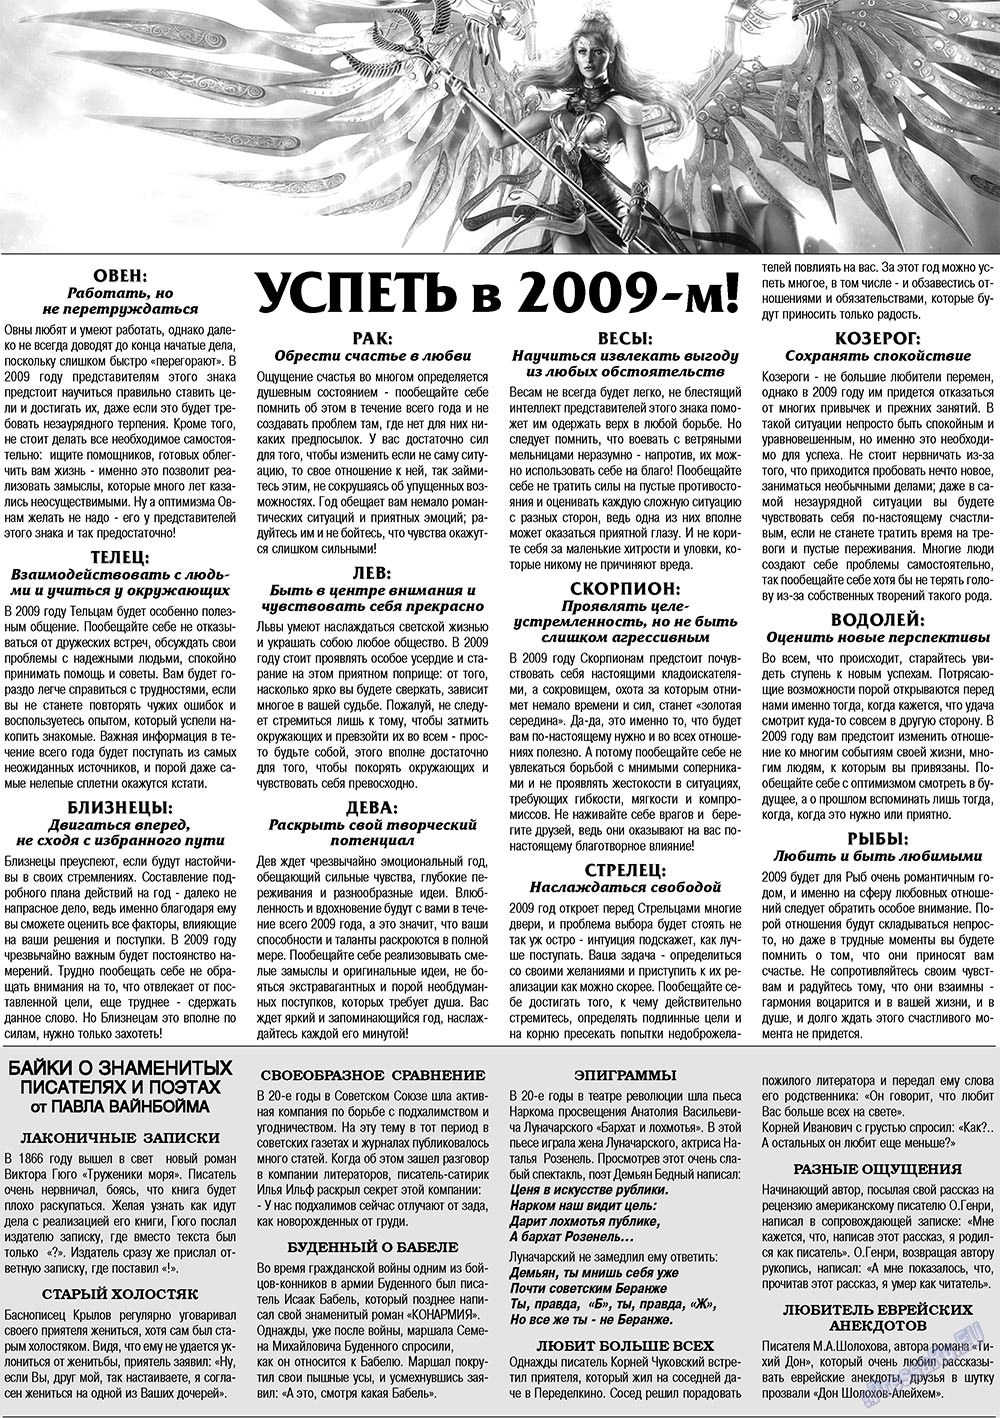 Кругозор плюс!, газета. 2009 №4 стр.47